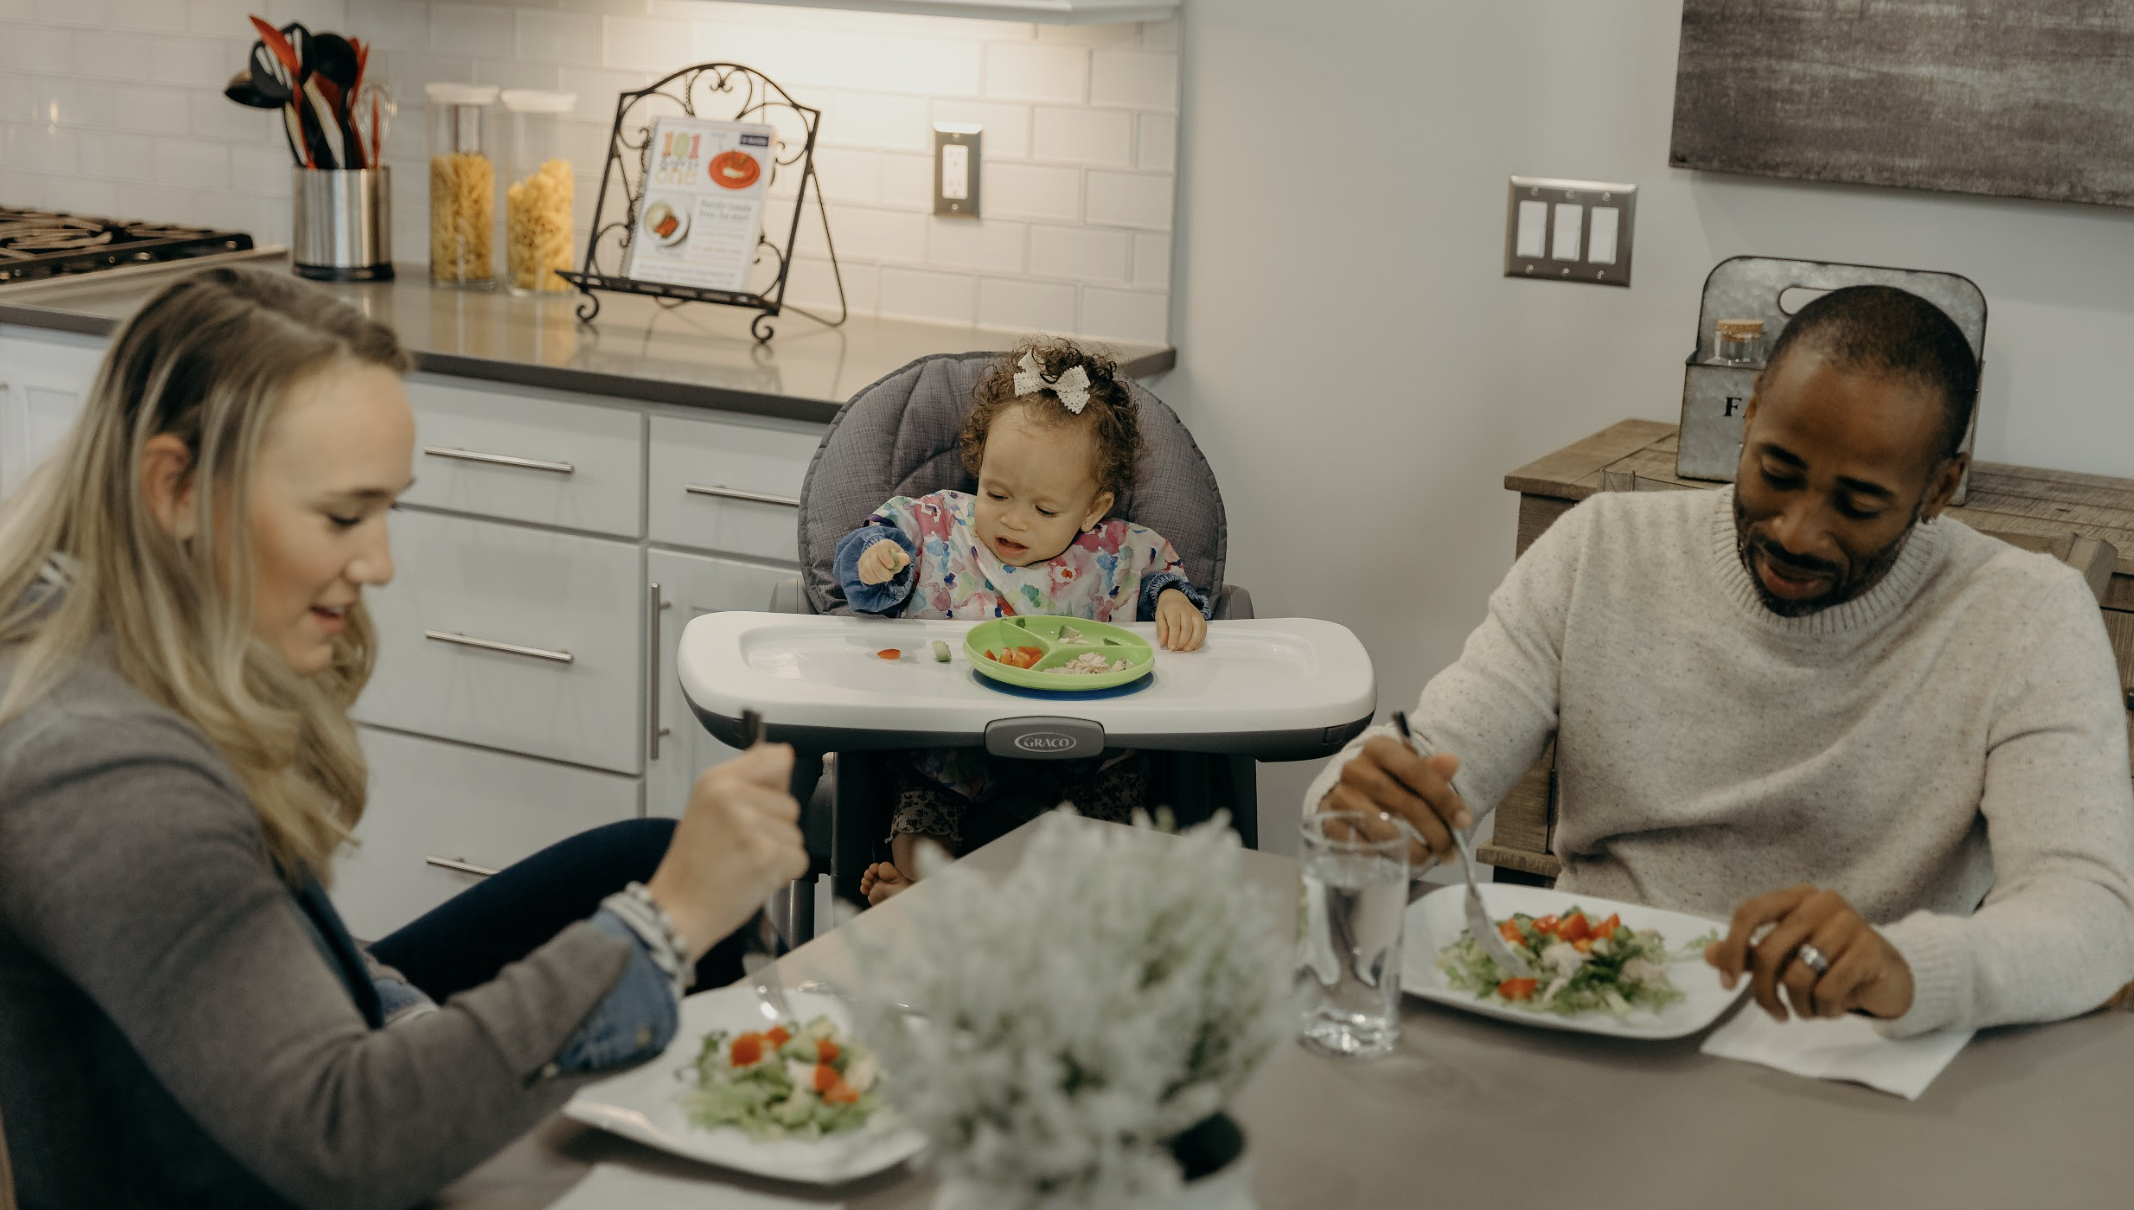 101 Family Dinner Recipes for Baby-led Feeding